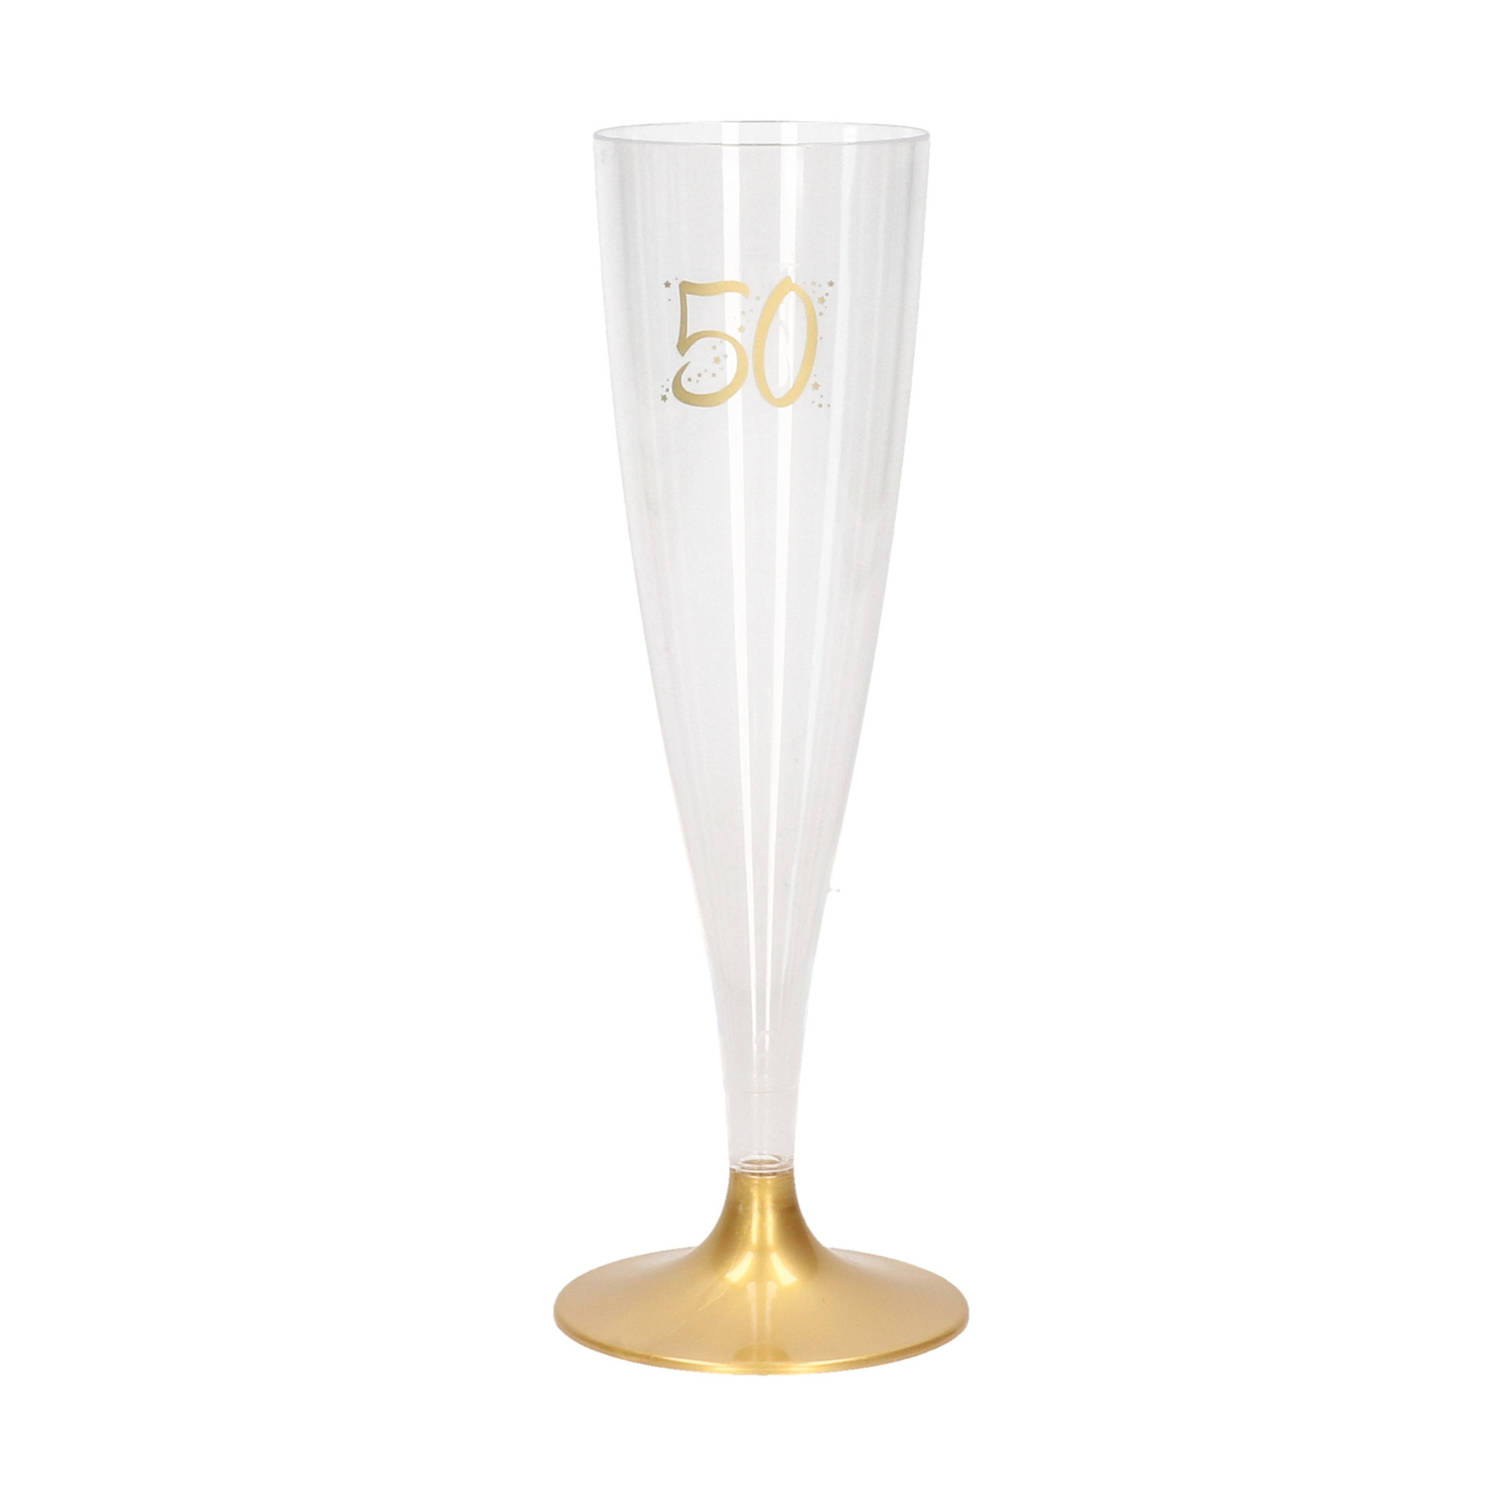 6x 50 jaar/Abraham/Sarah cl/140 ml van kunststof met gouden voet - Champagne glaasjes |